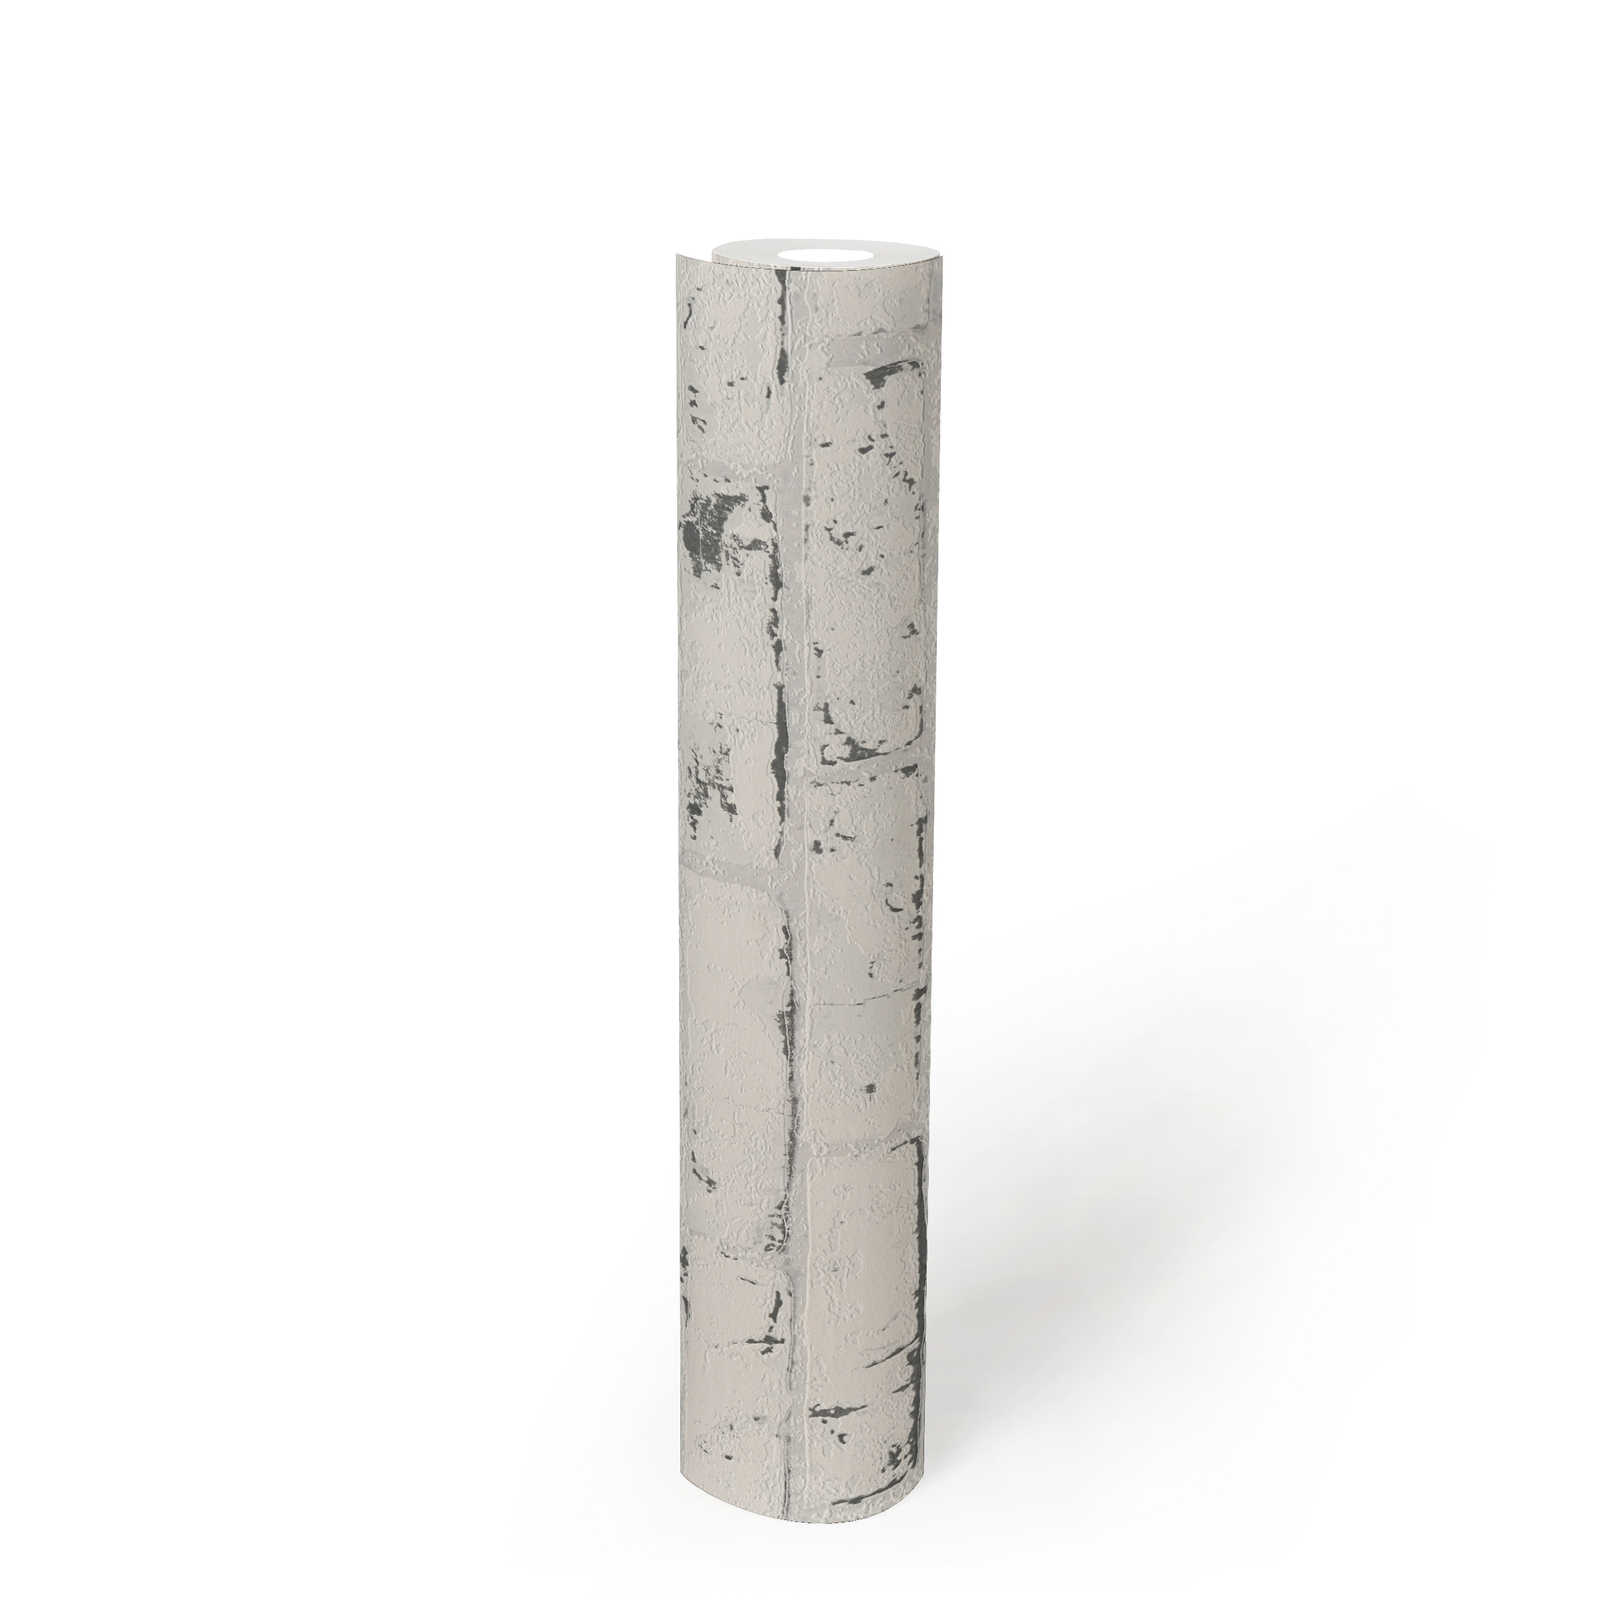             Papier peint imitation pierre avec motif de briques & effet 3D - gris, beige
        